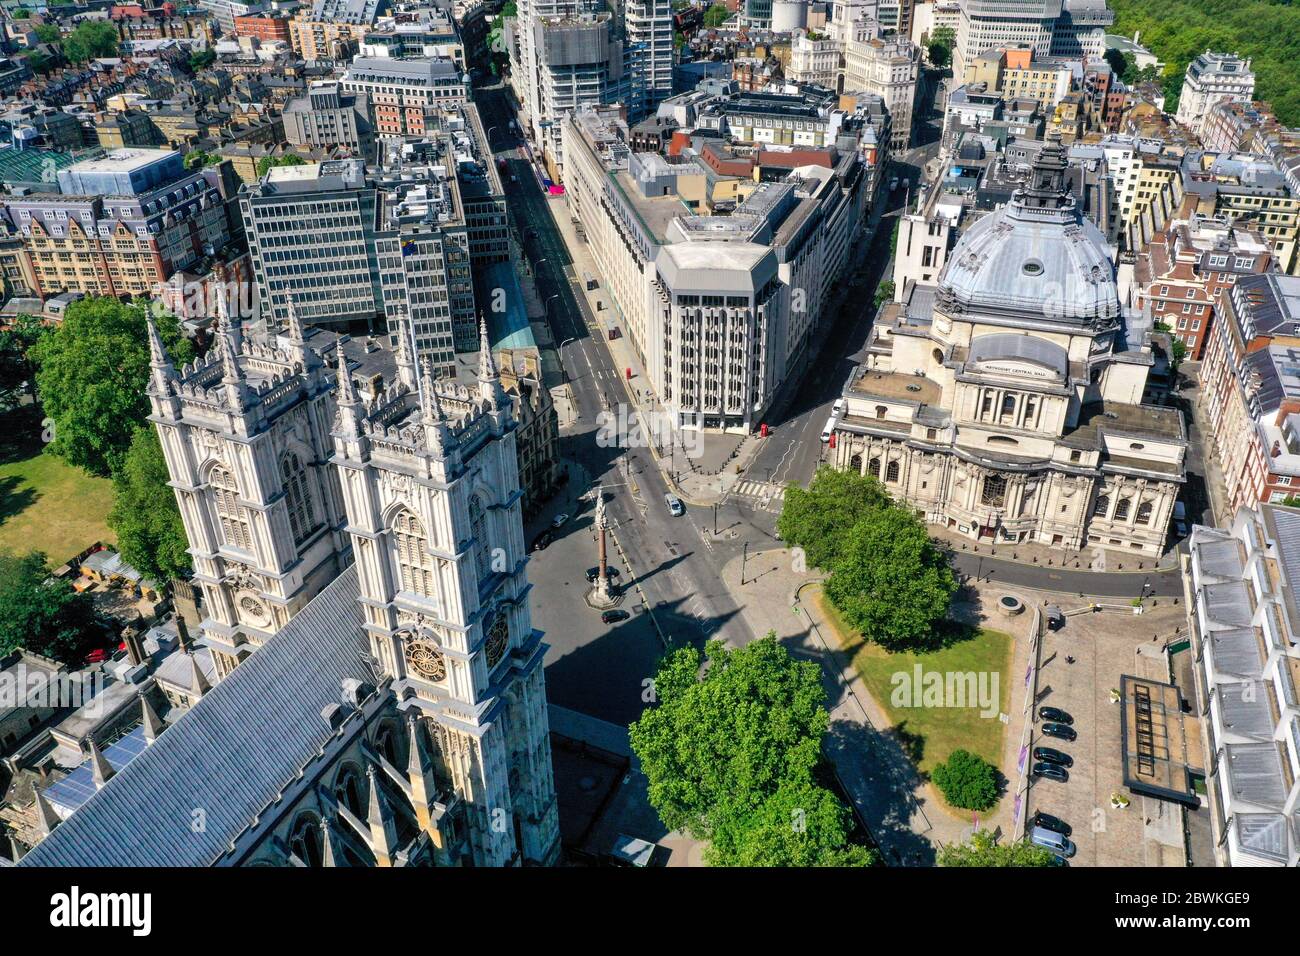 Una vista aerea di Londra, all'incrocio tra Victoria Street e Tothill Street, che mostra l'Abbazia di Westminster (in basso a sinistra), il memoriale di Crimea e Indian Mutiny, il dipartimento per l'istruzione (in alto a sinistra), la Barclays Bank (al centro) e la Methodist Central Hall sulla porta della storia (a destra). Foto Stock